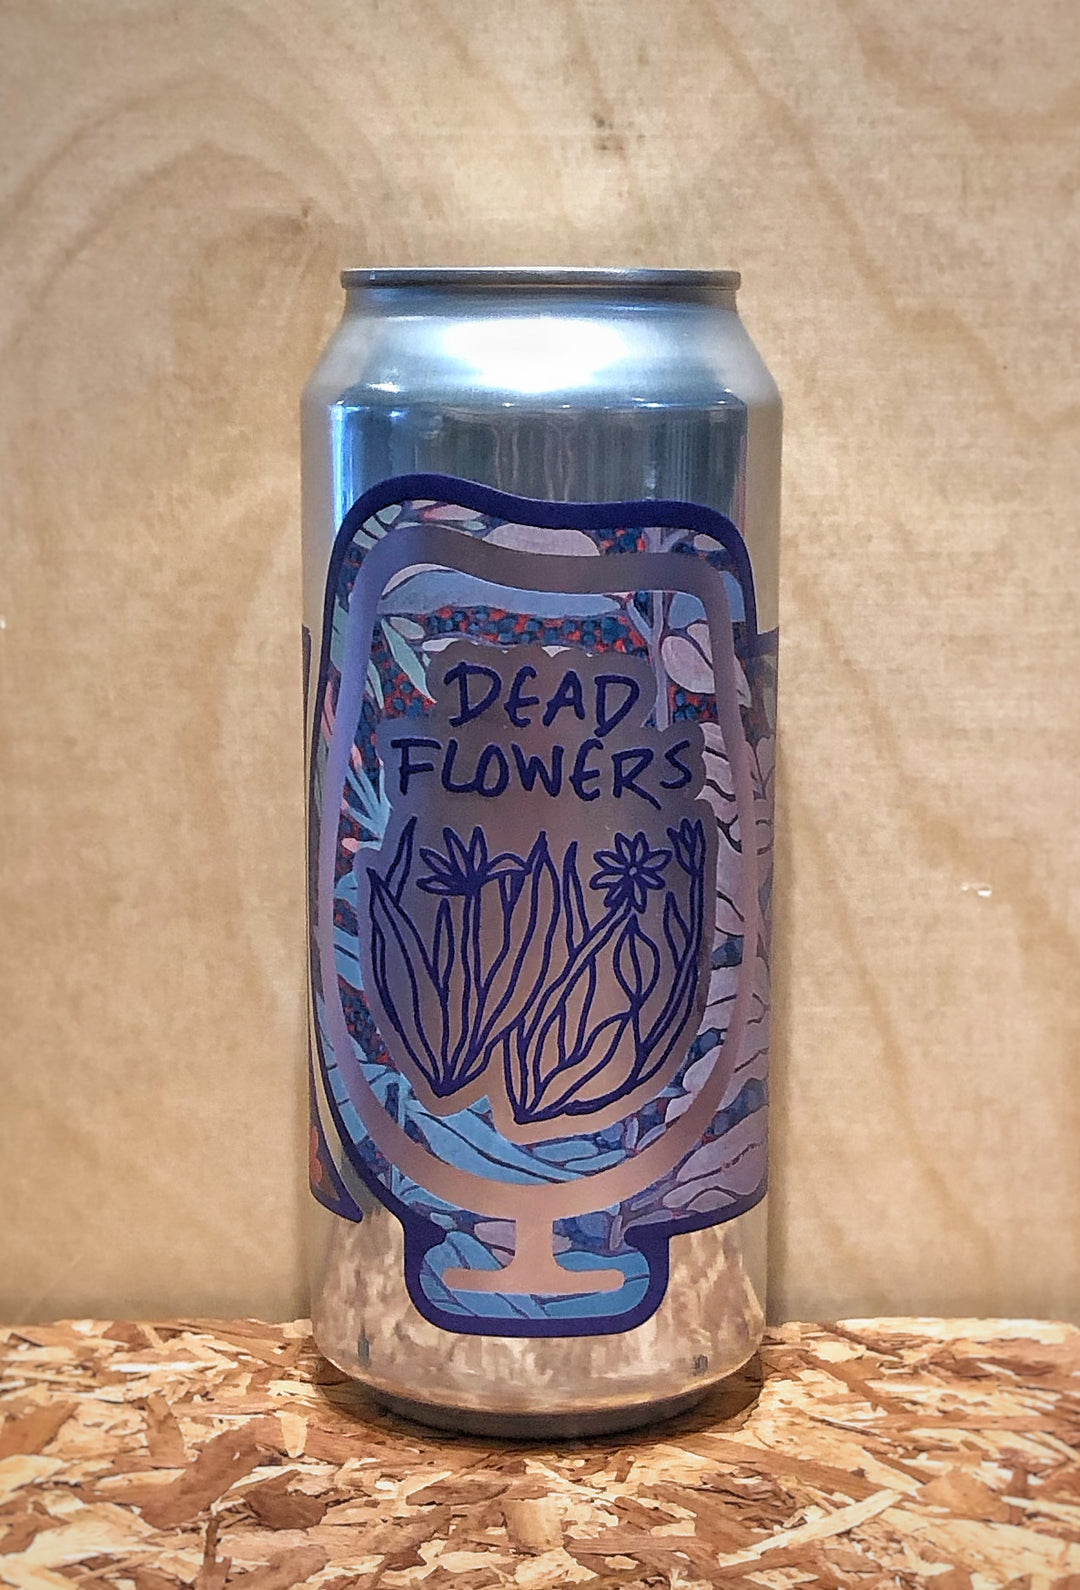 Foam Brewers 'Dead Flowers' India Pale Ale (Burlington, VT)